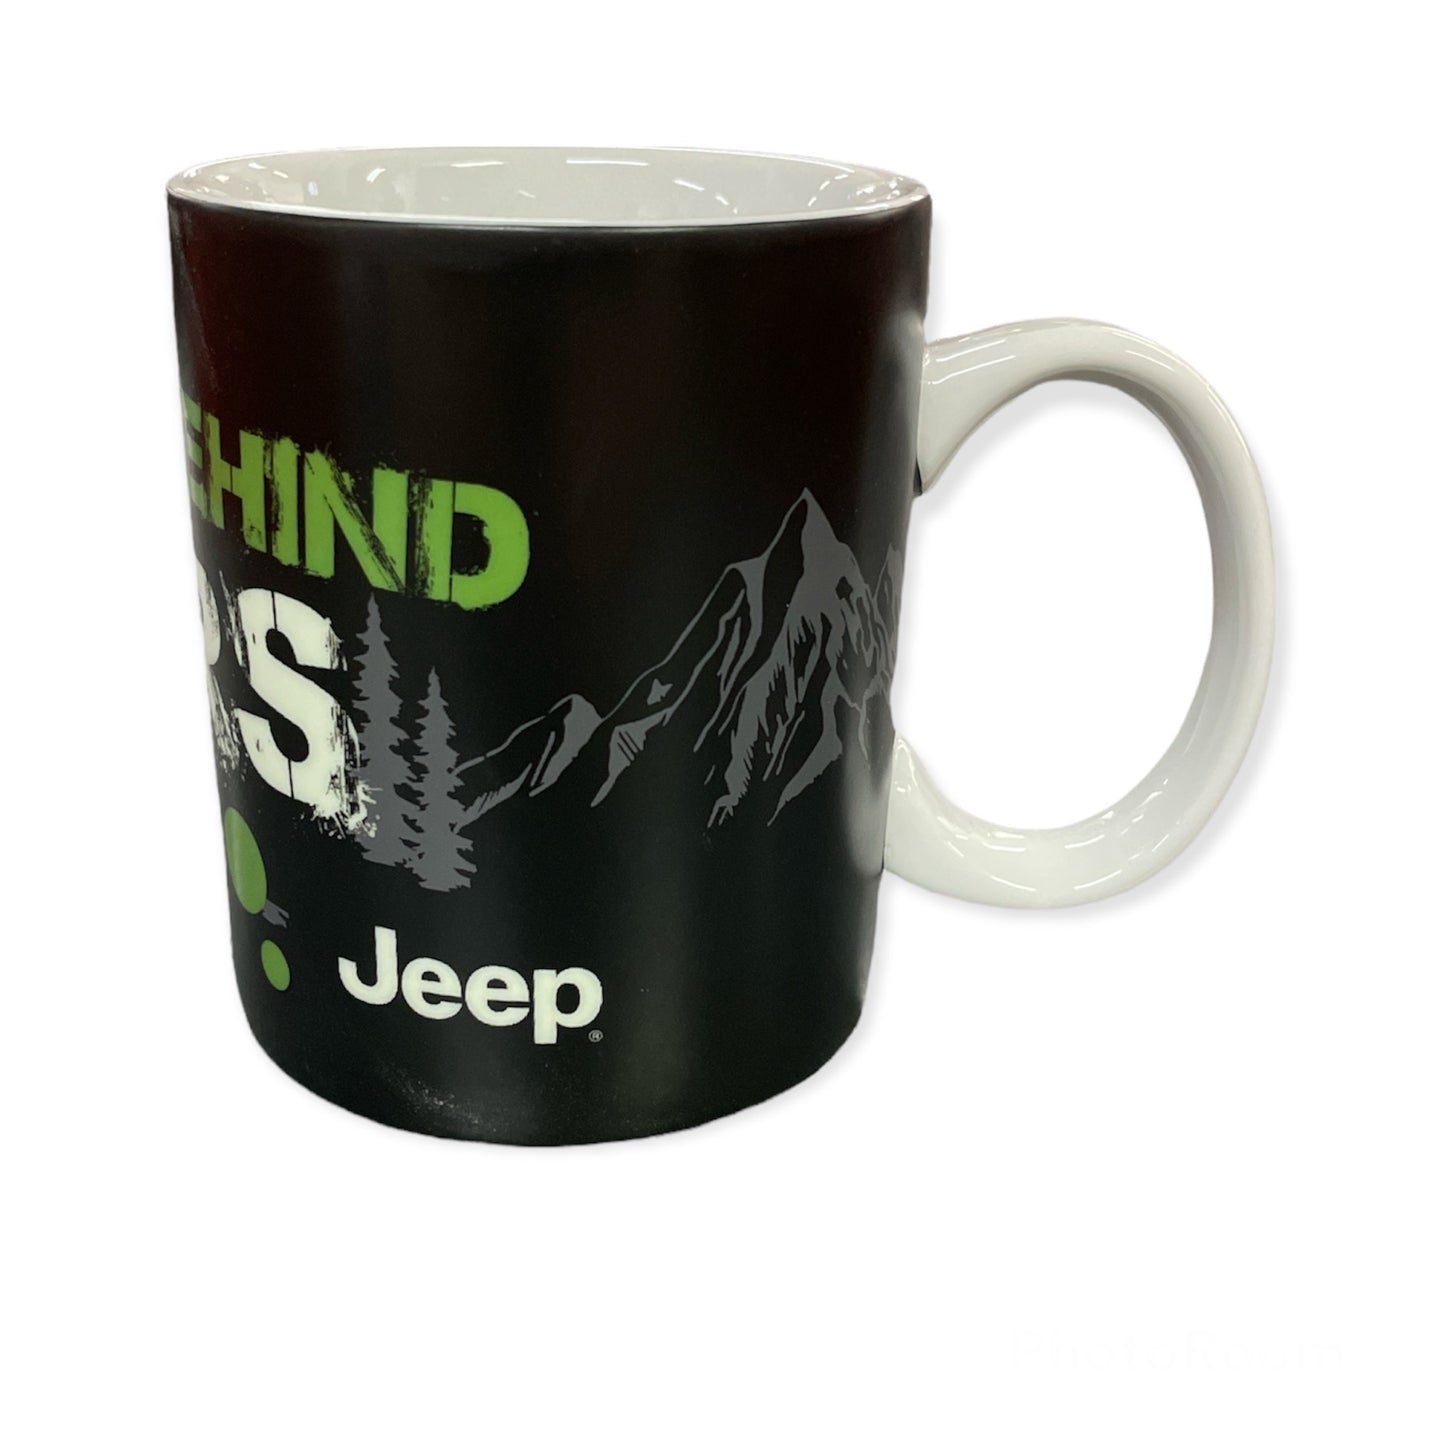 Jeep Kaffeetasse Tasse Mug mit Jeep Motiv "Behind Bars"